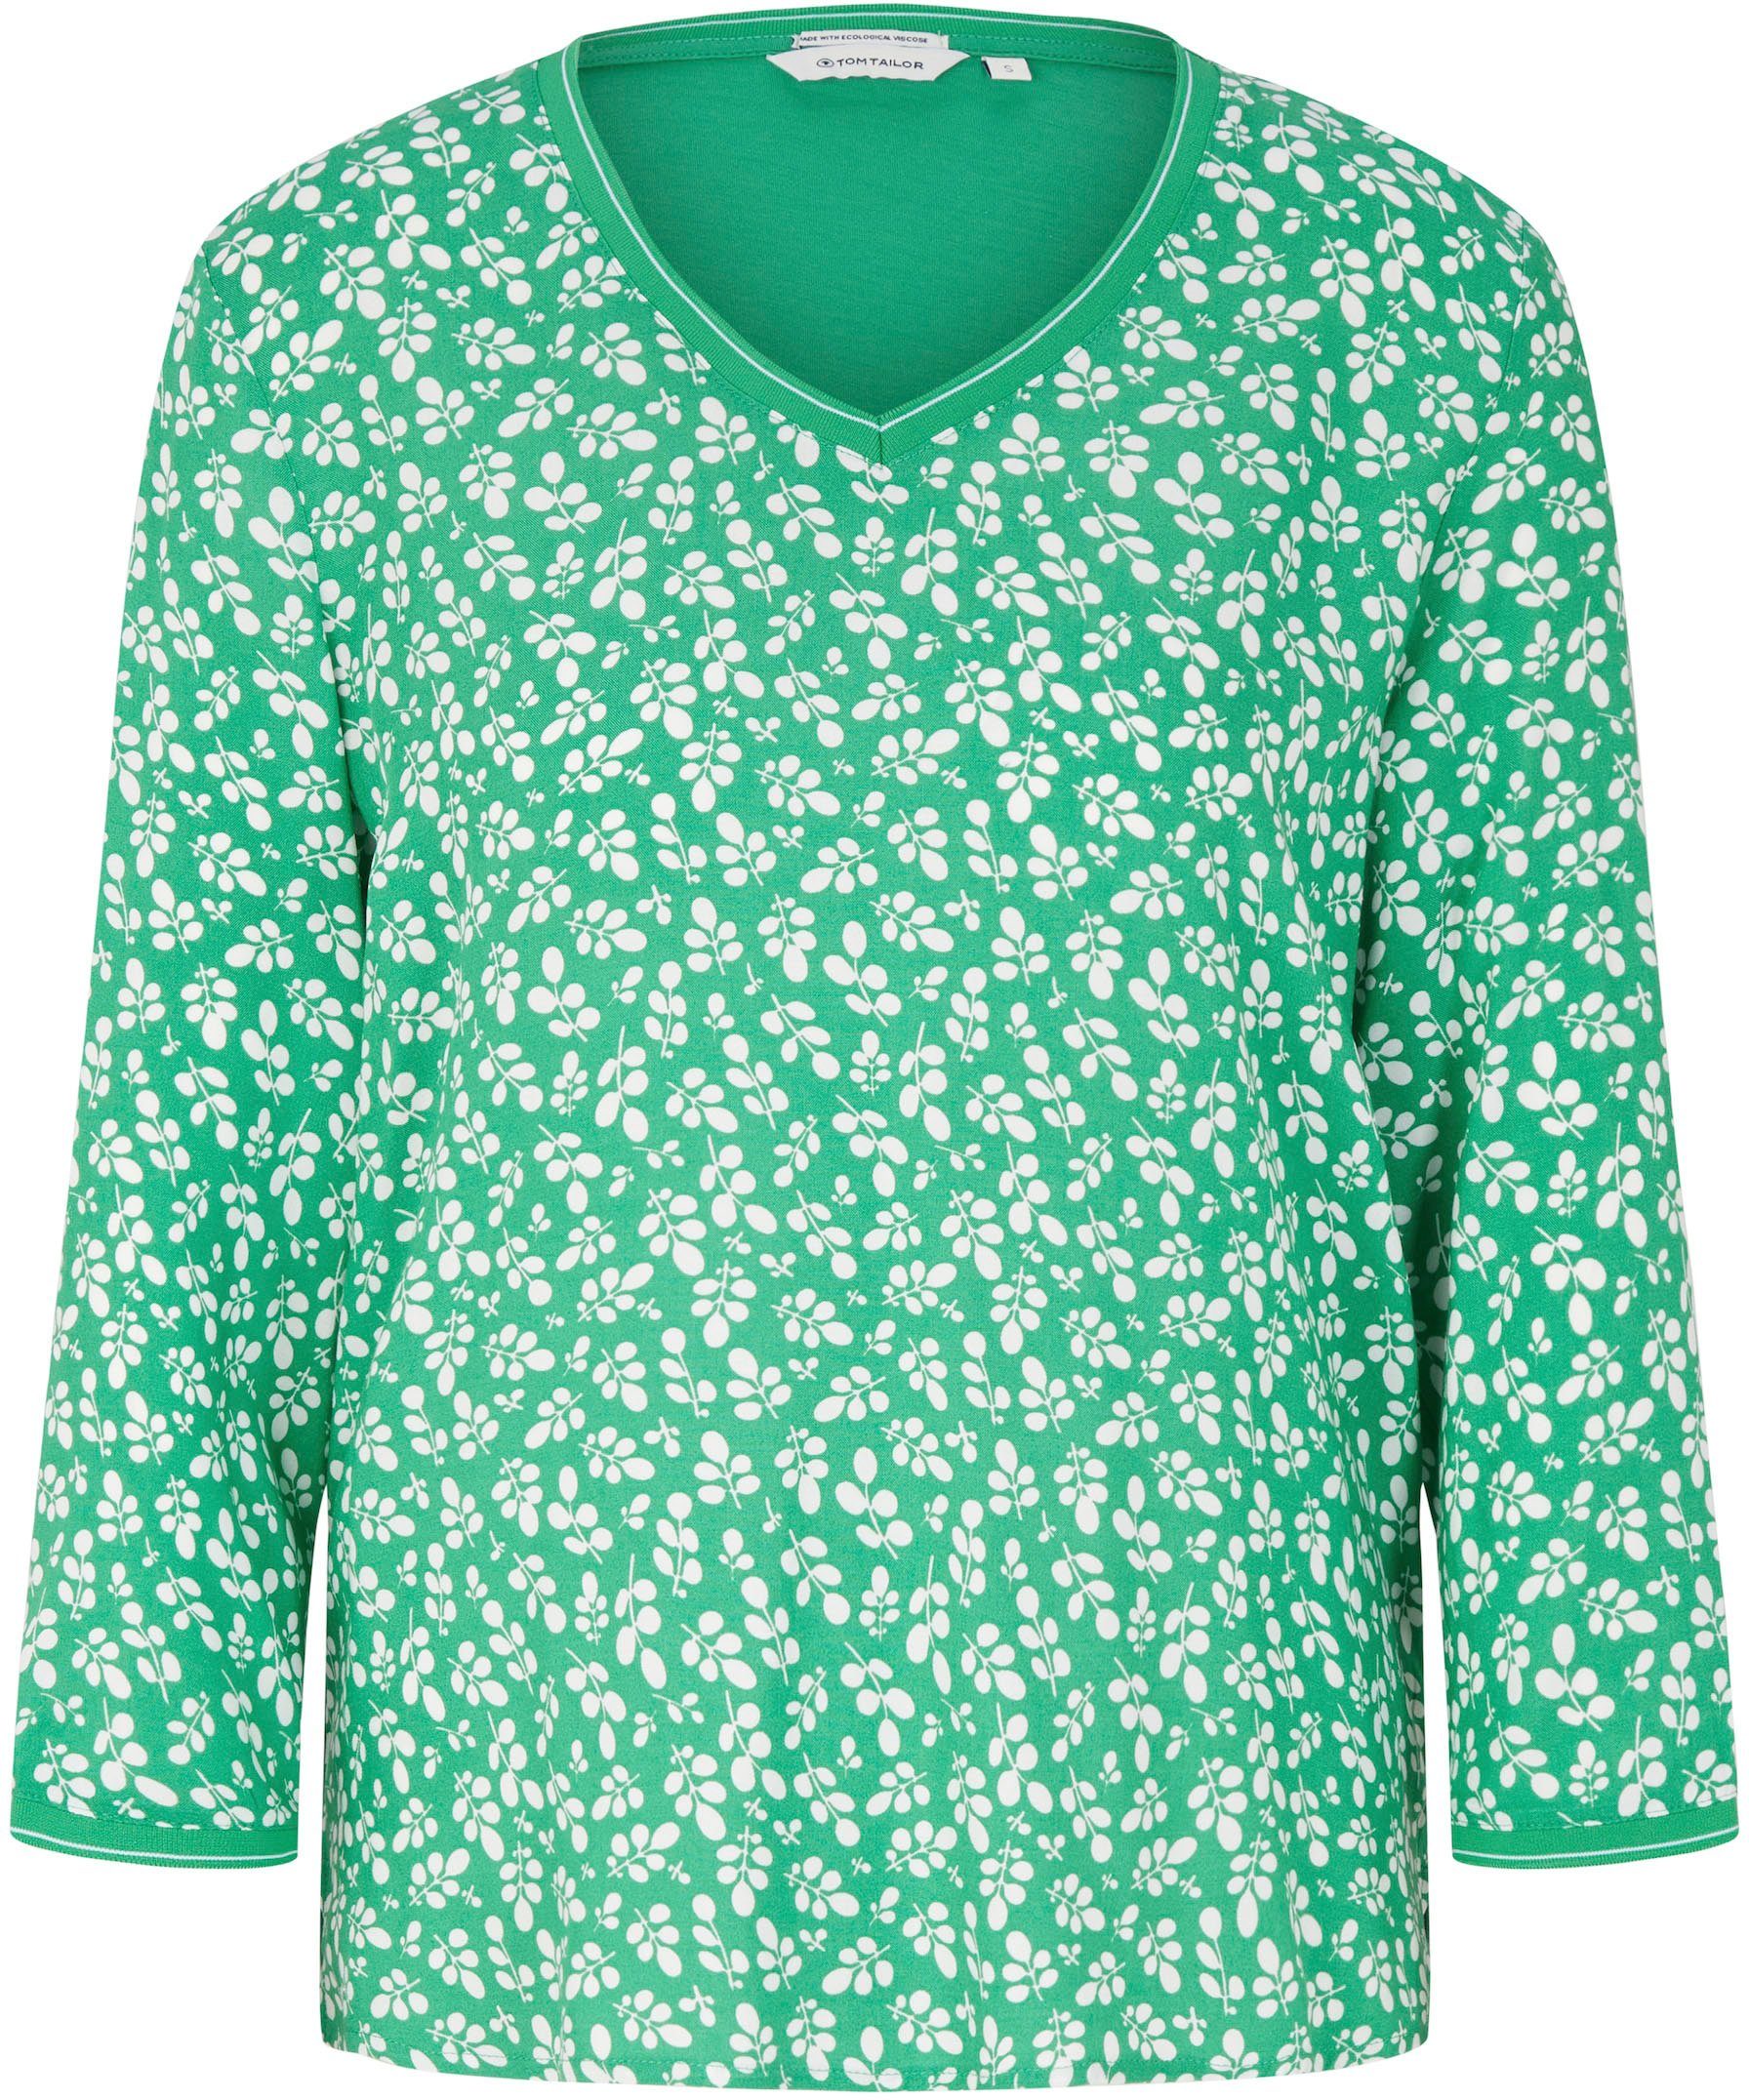 TOM TAILOR T-Shirt mit Bedruckung green flor